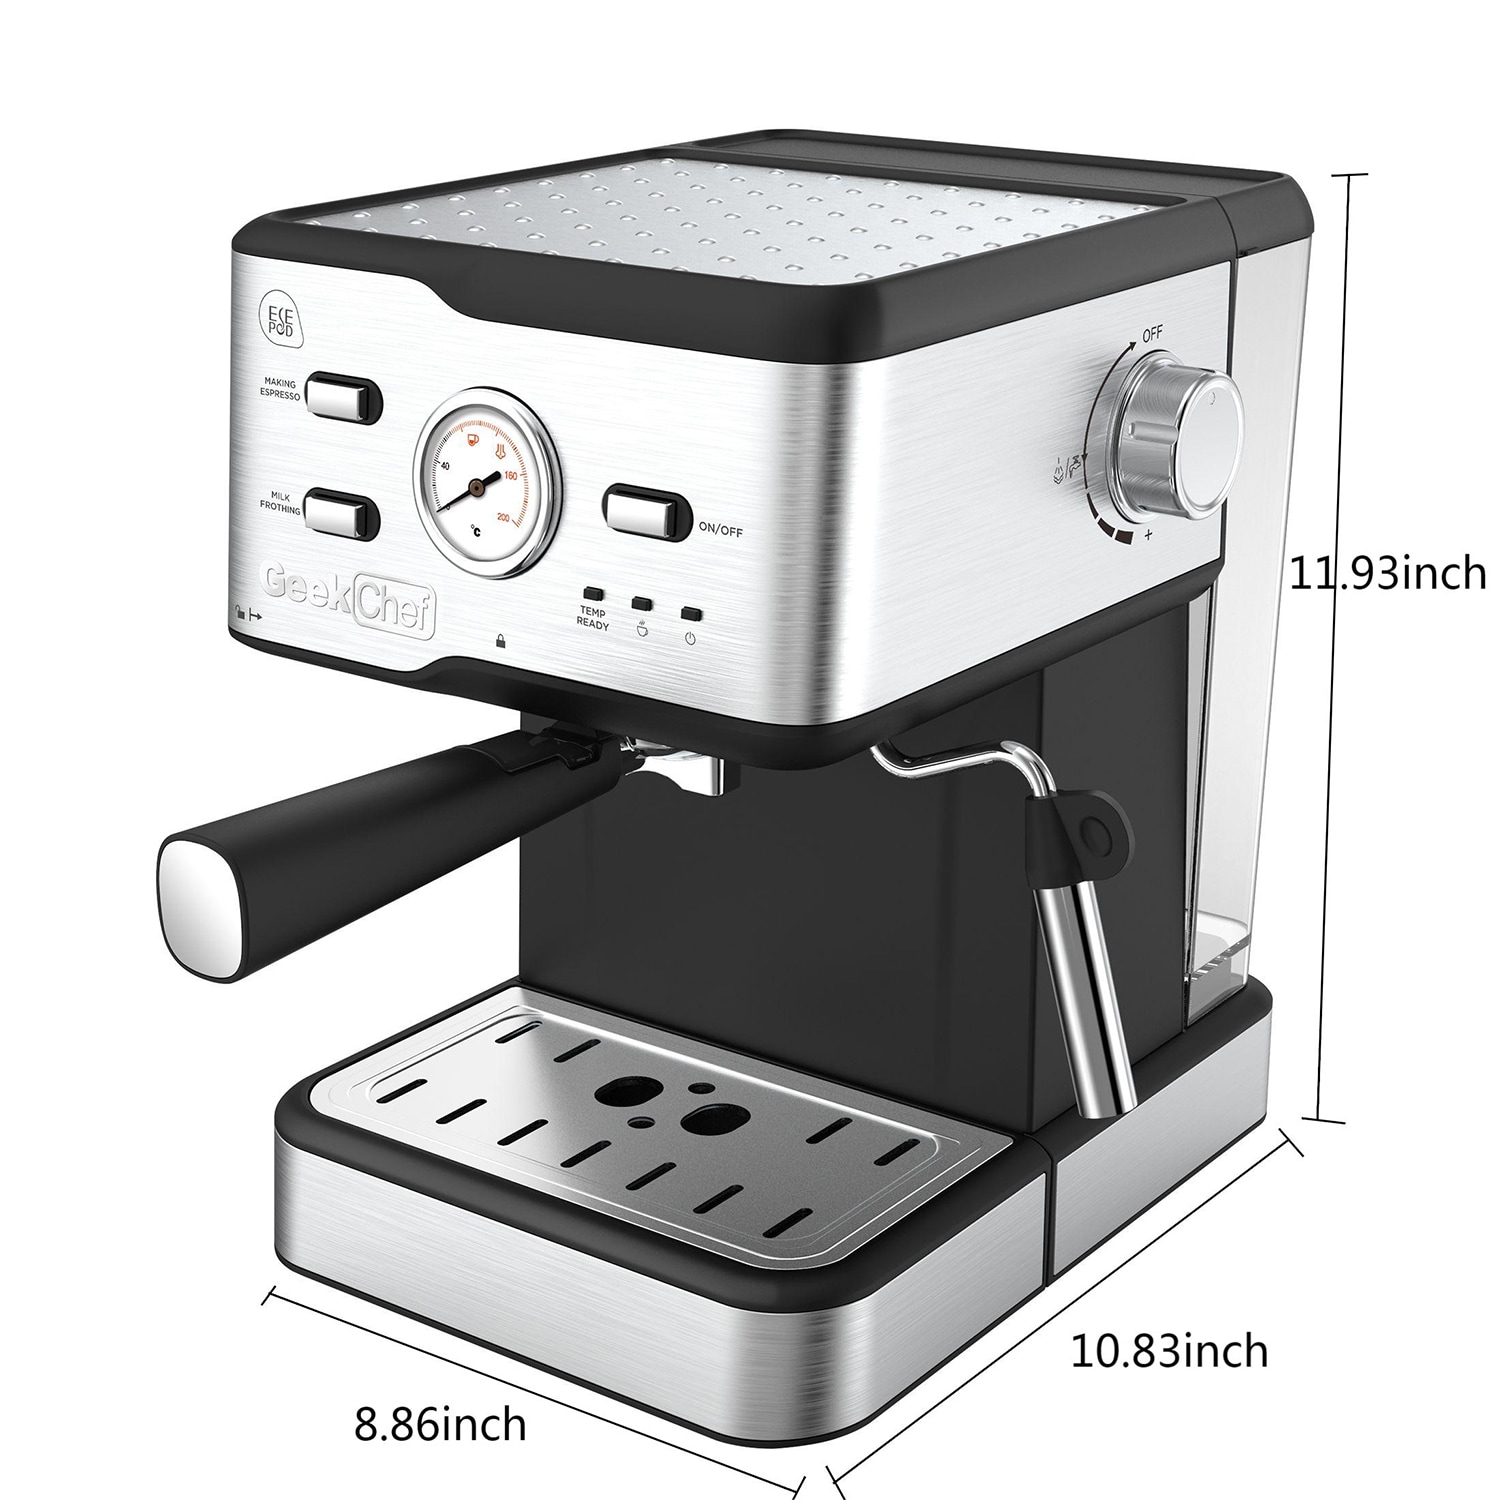 Aicook Espresso And Coffee Machine, 3 In 1 Combination 15Bar